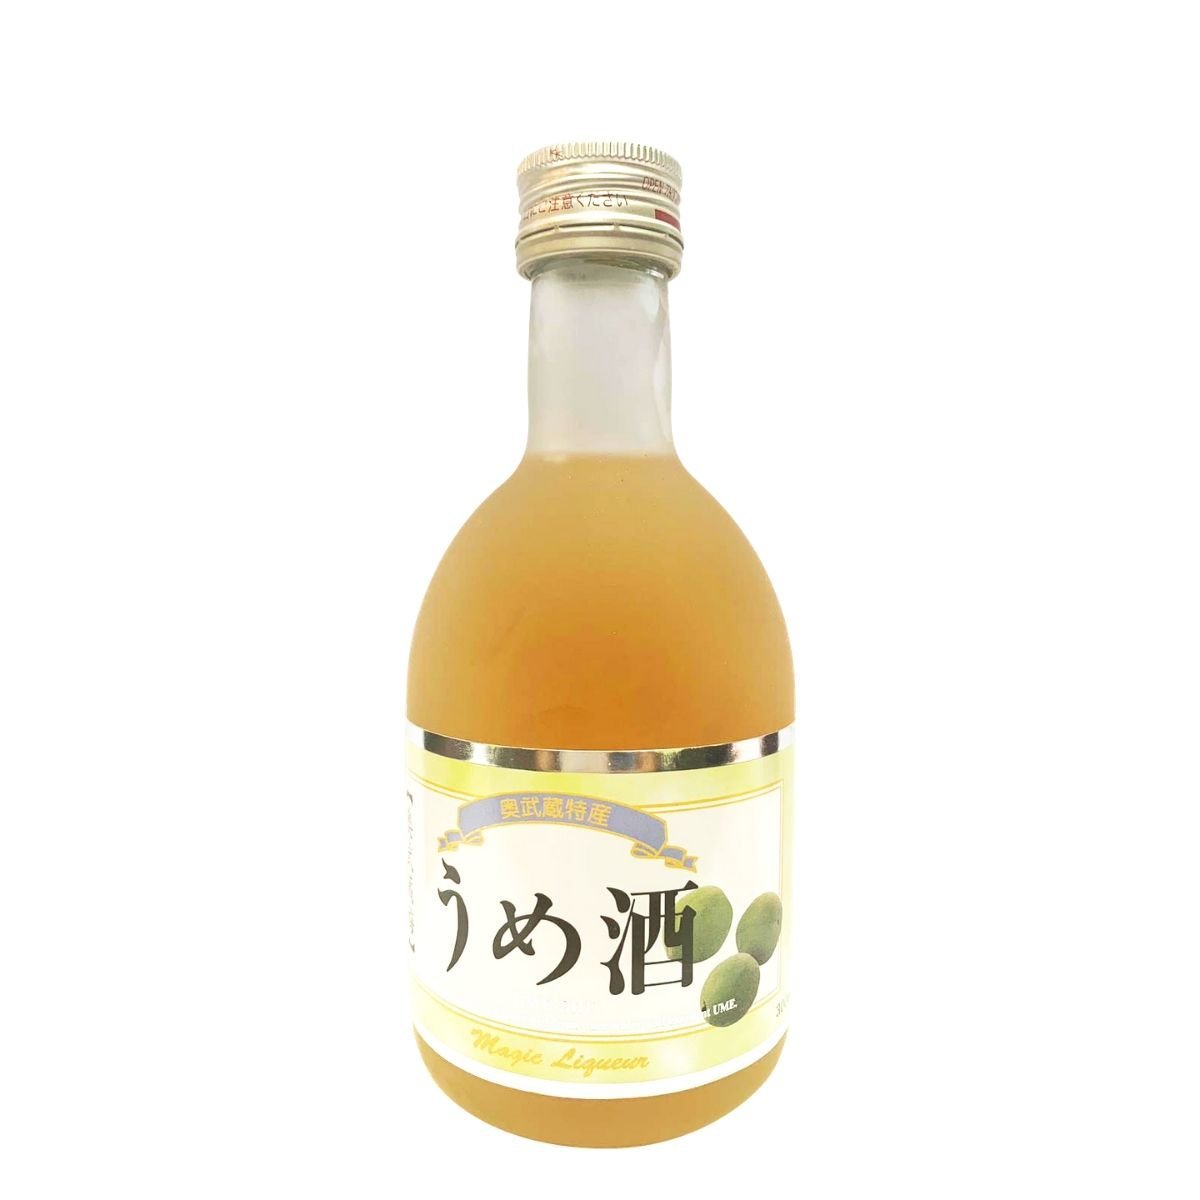 0118壓縮-奧武藏梅酒300ml